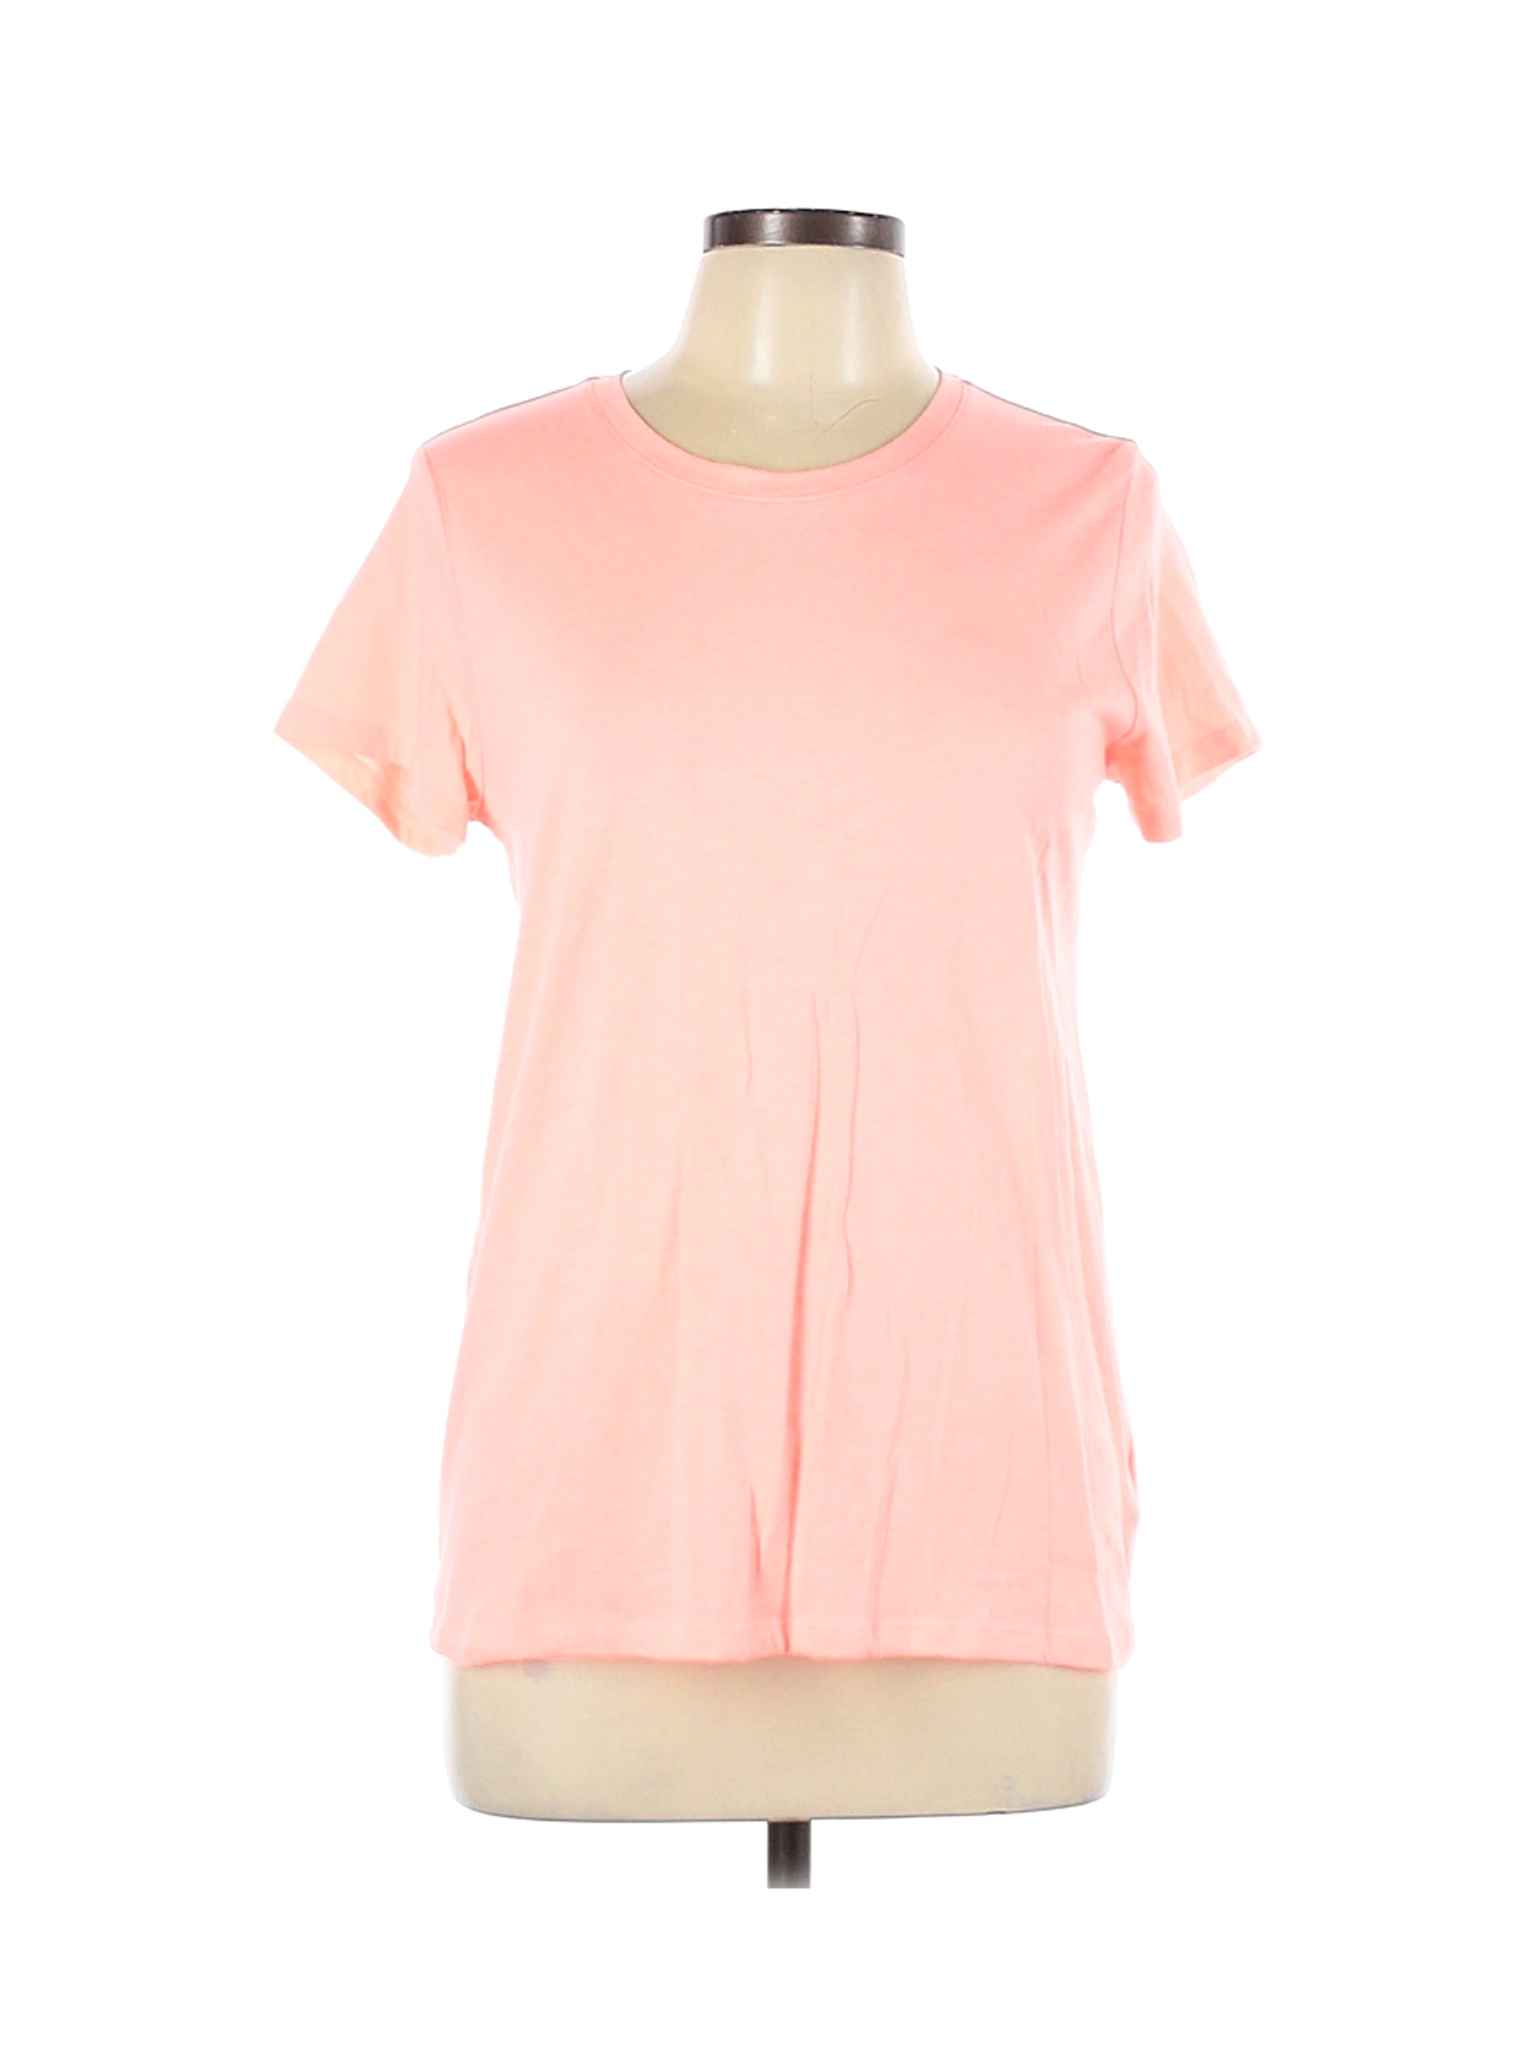 Gap Women Pink Short Sleeve T-Shirt L | eBay